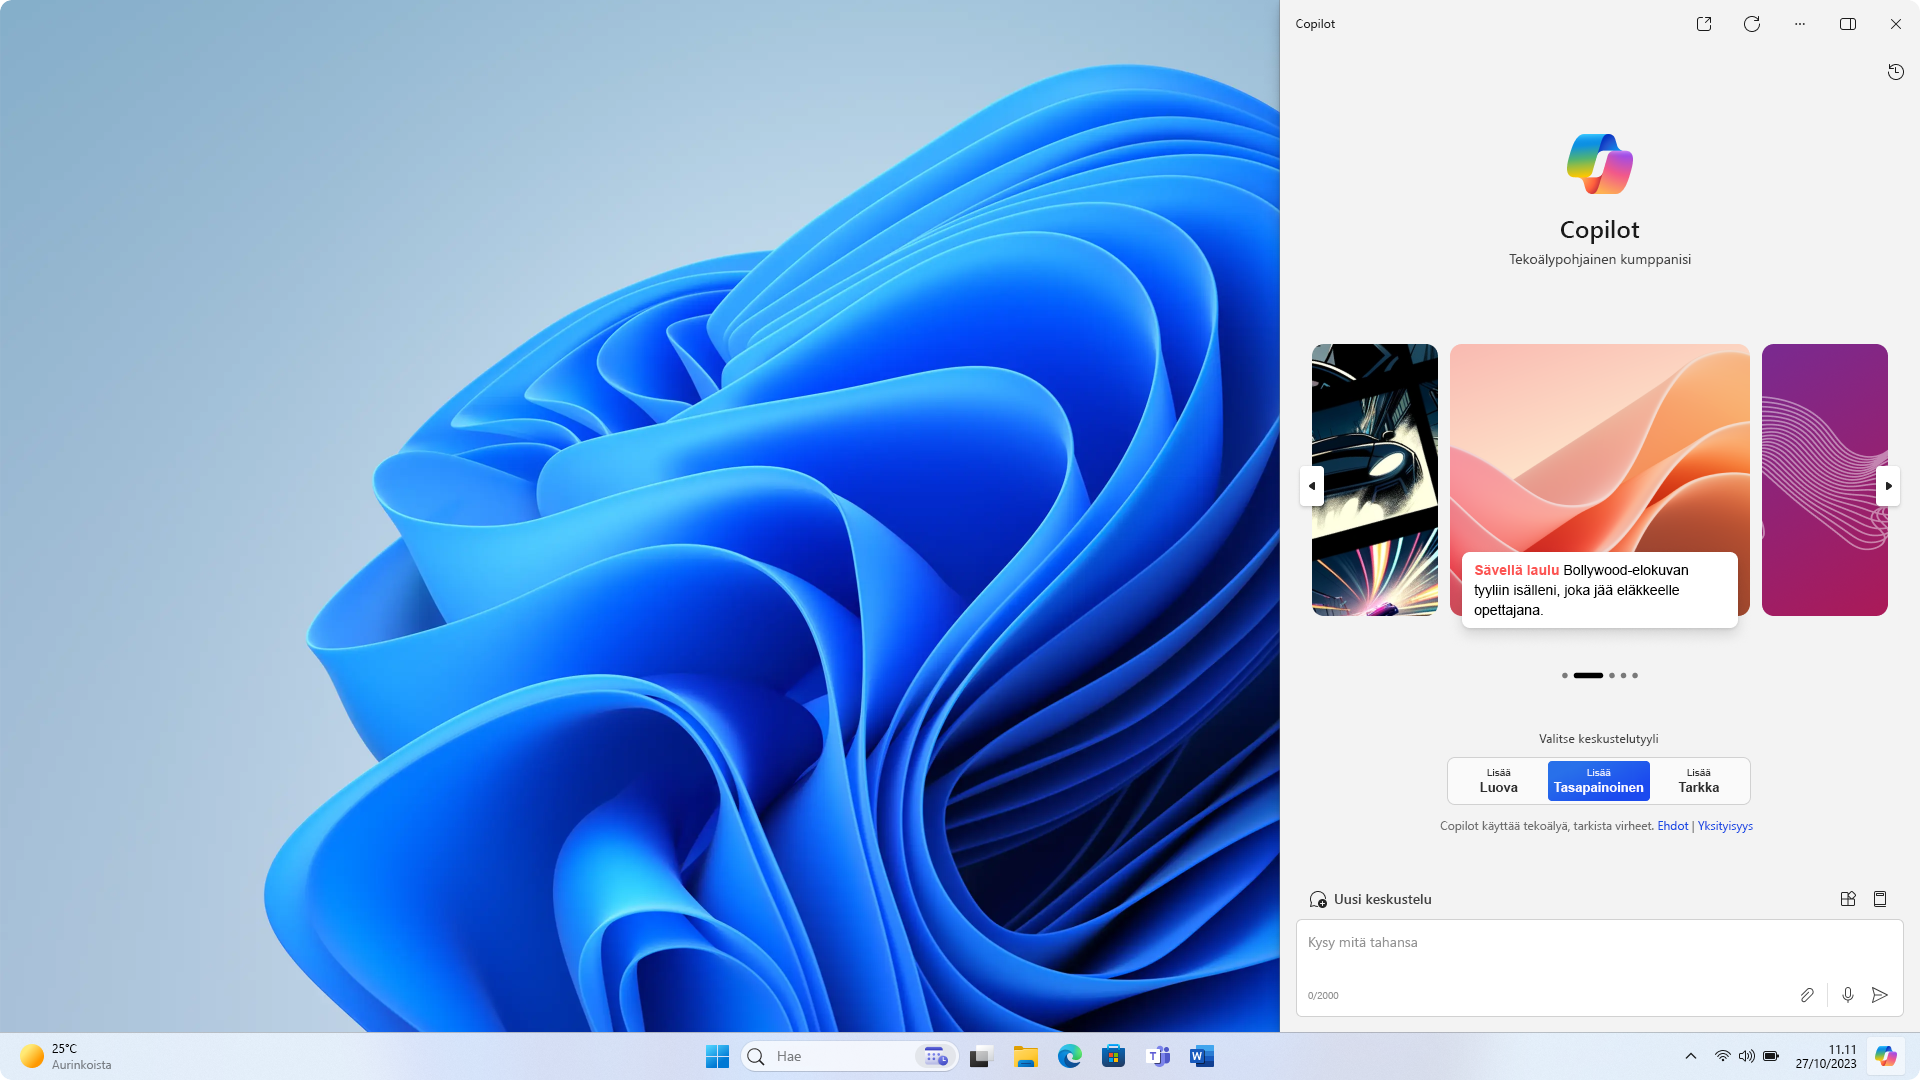 Näyttökuva Windowsin työpöydästä, jossa käytetään vaaleaa teemaa ja Windowsin sivupalkin Copilot-kuvake, joka vastaa teemaa.